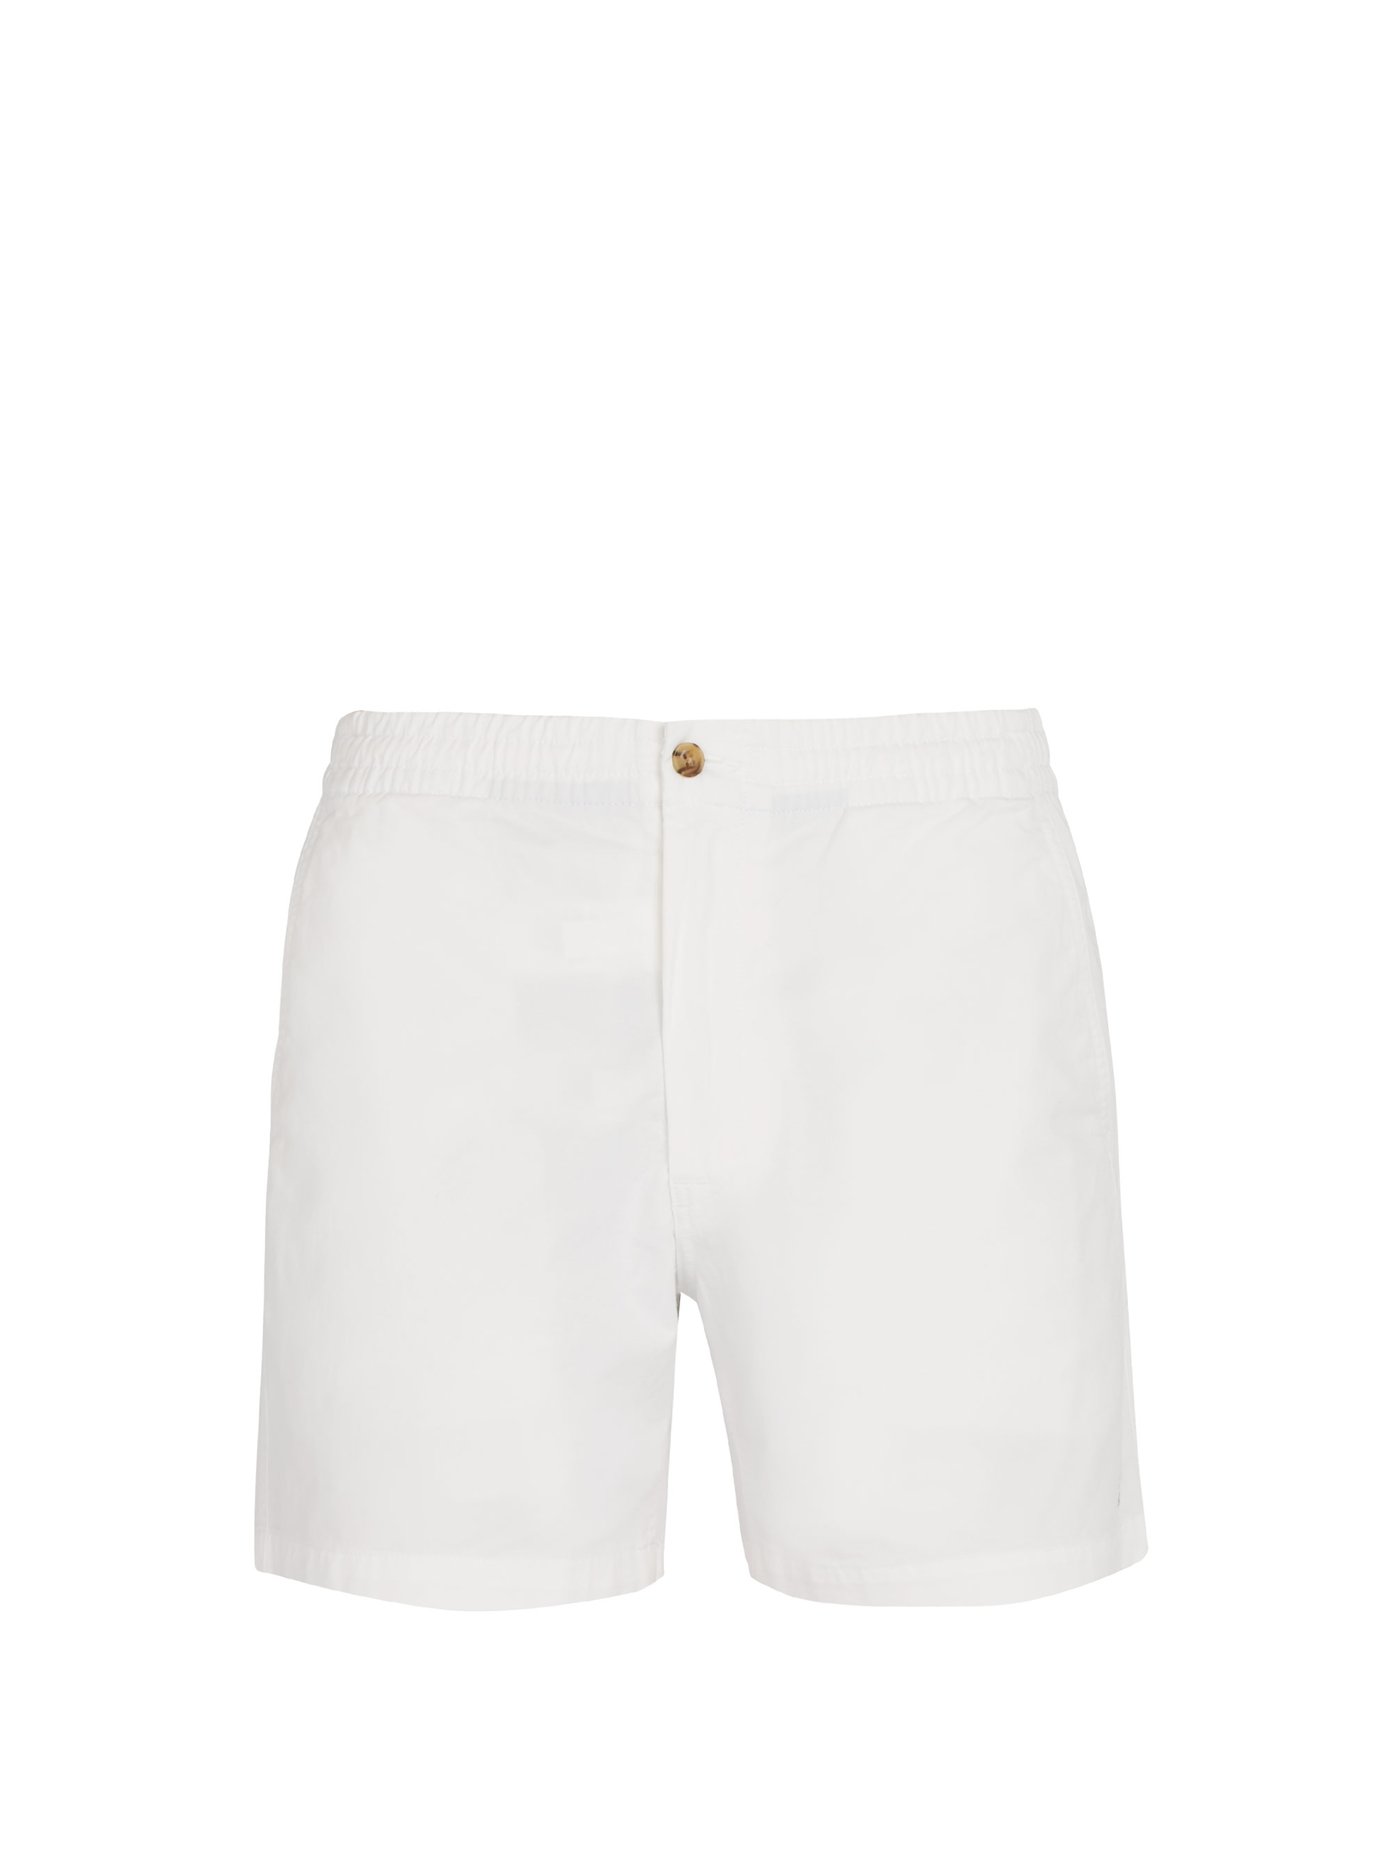 ralph lauren elastic waist shorts